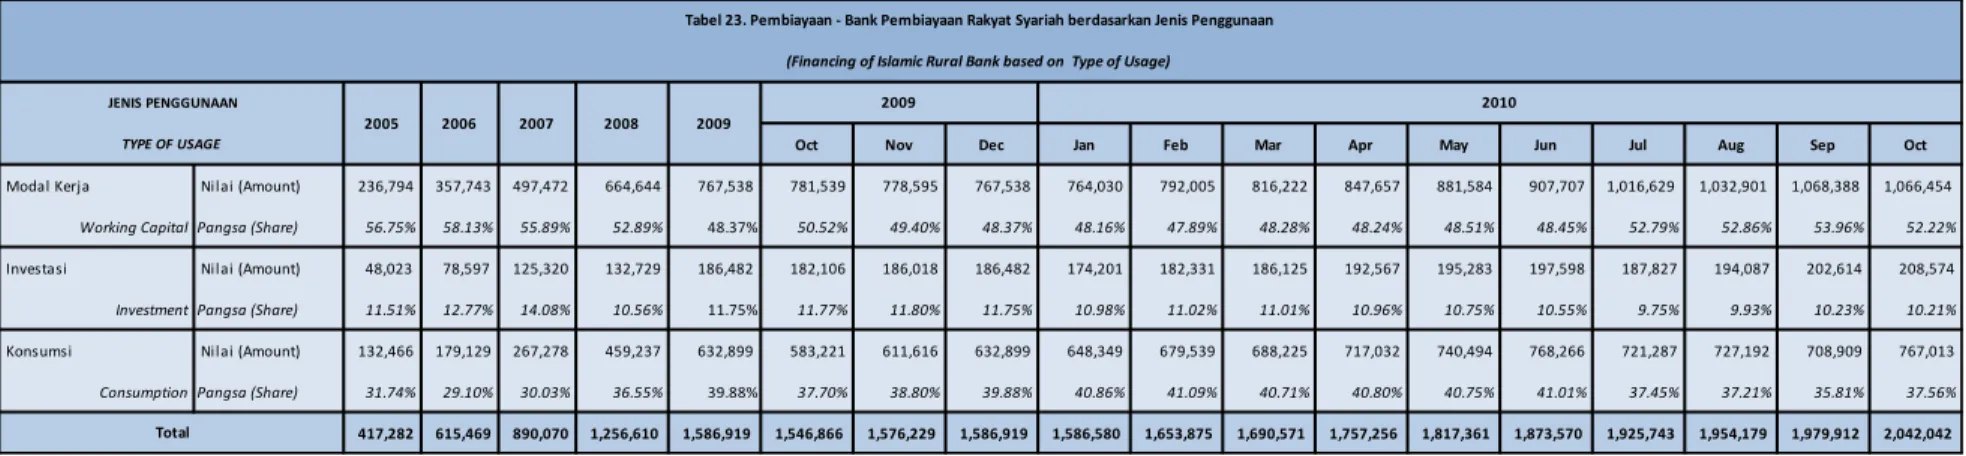 Tabel 23. Pembiayaan - Bank Pembiayaan Rakyat Syariah berdasarkan Jenis Penggunaan 